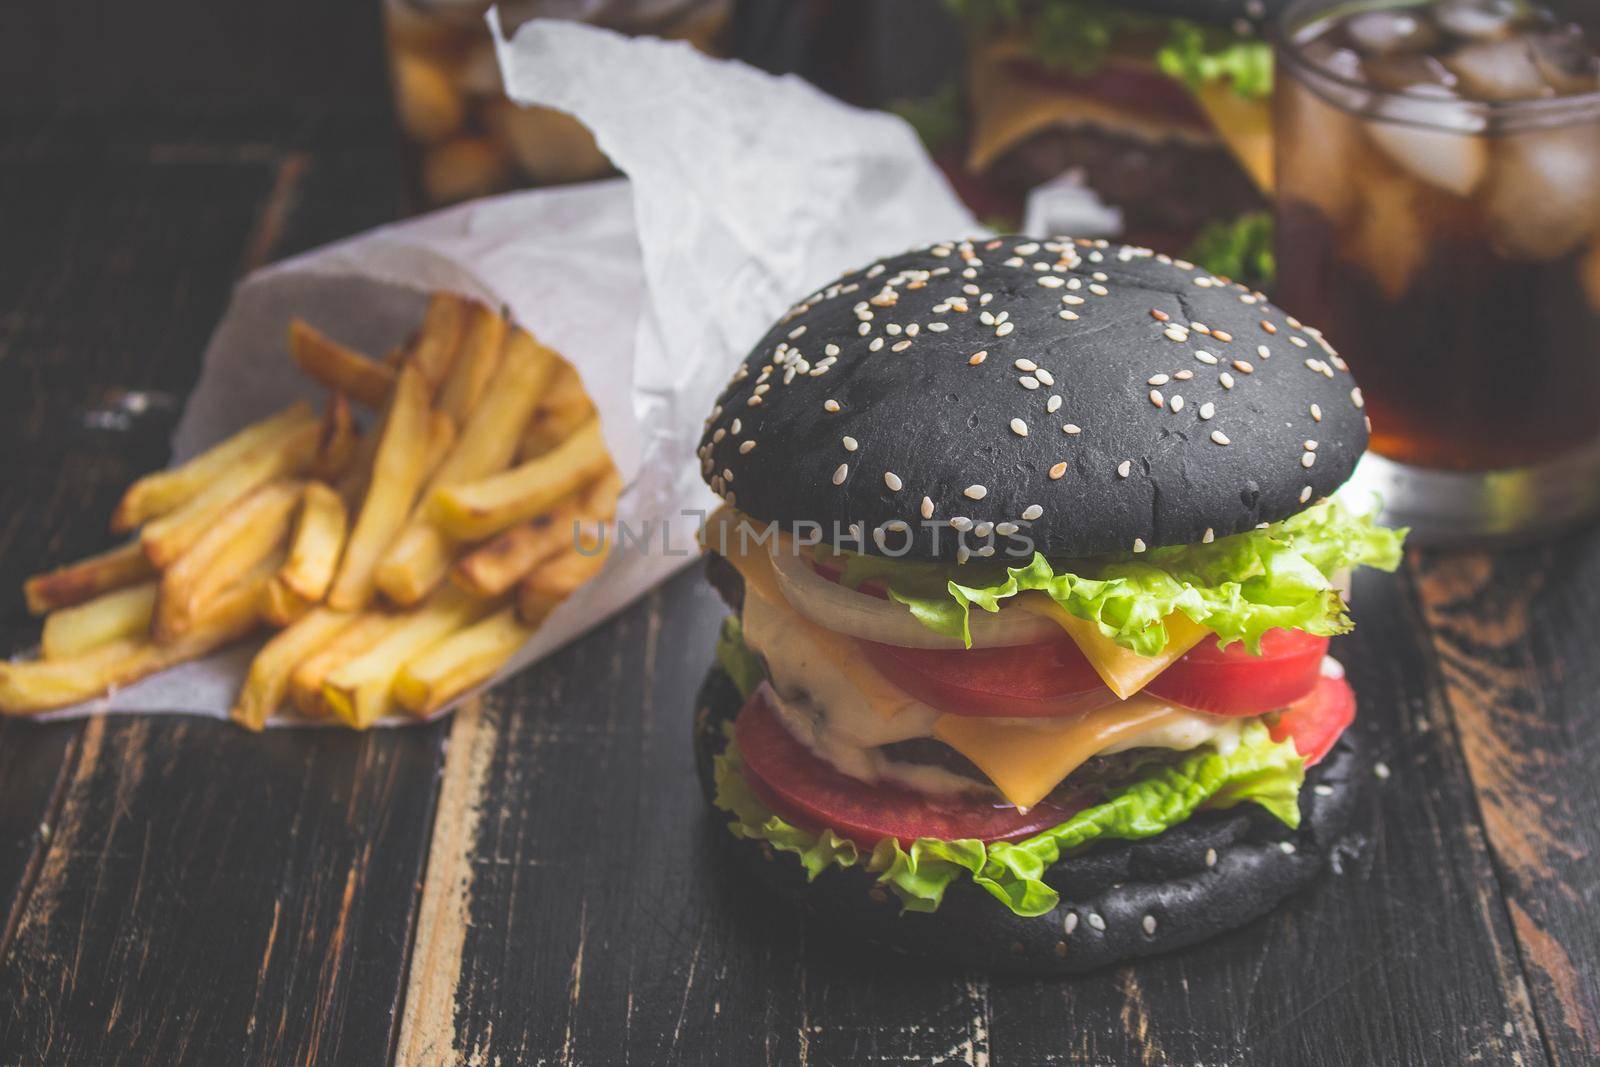 Black burger by its_al_dente